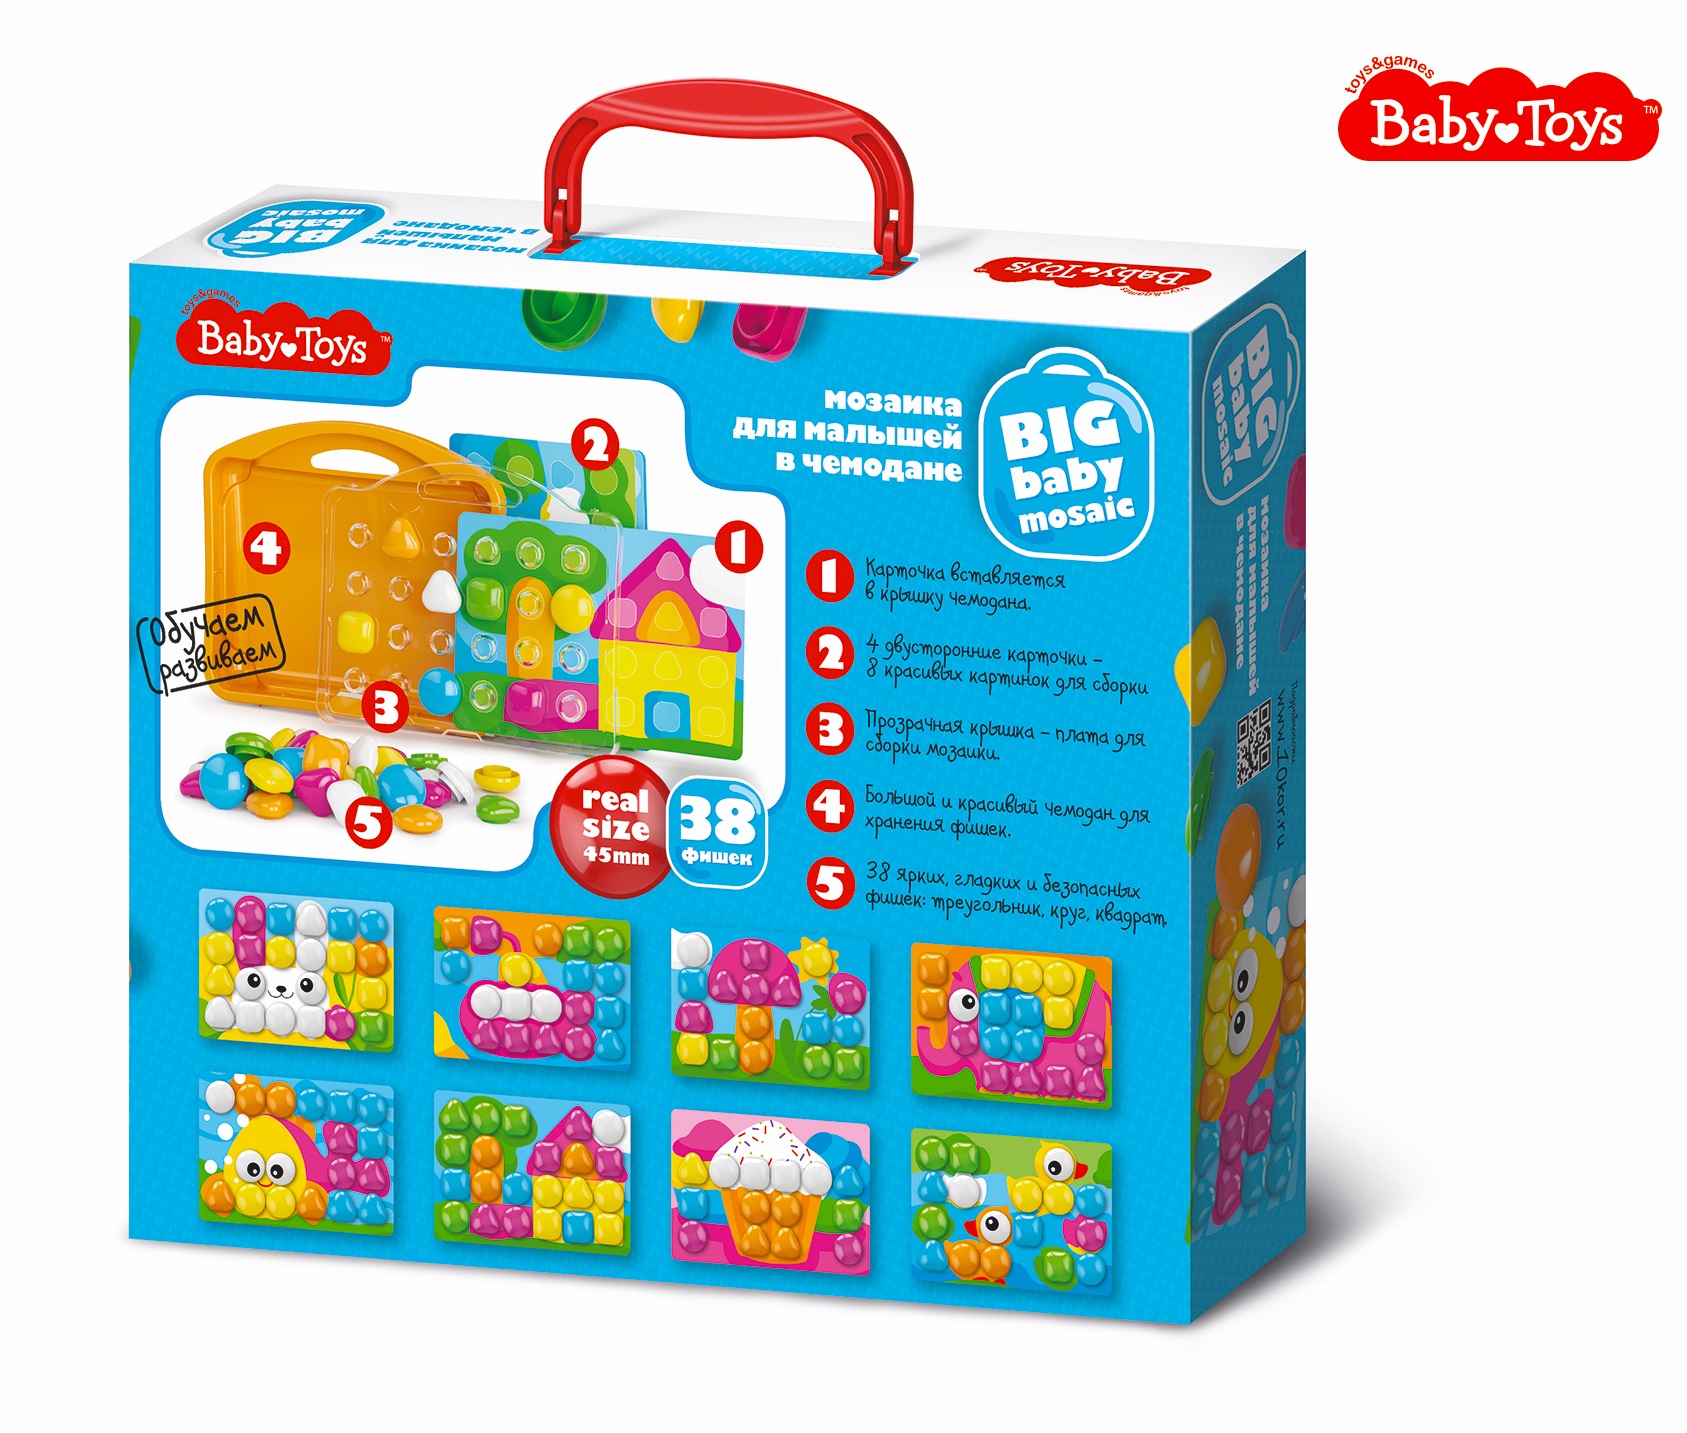 Мозаика для малышей в чемодане Утята d45/38 эл Baby Toys (Вид 2)